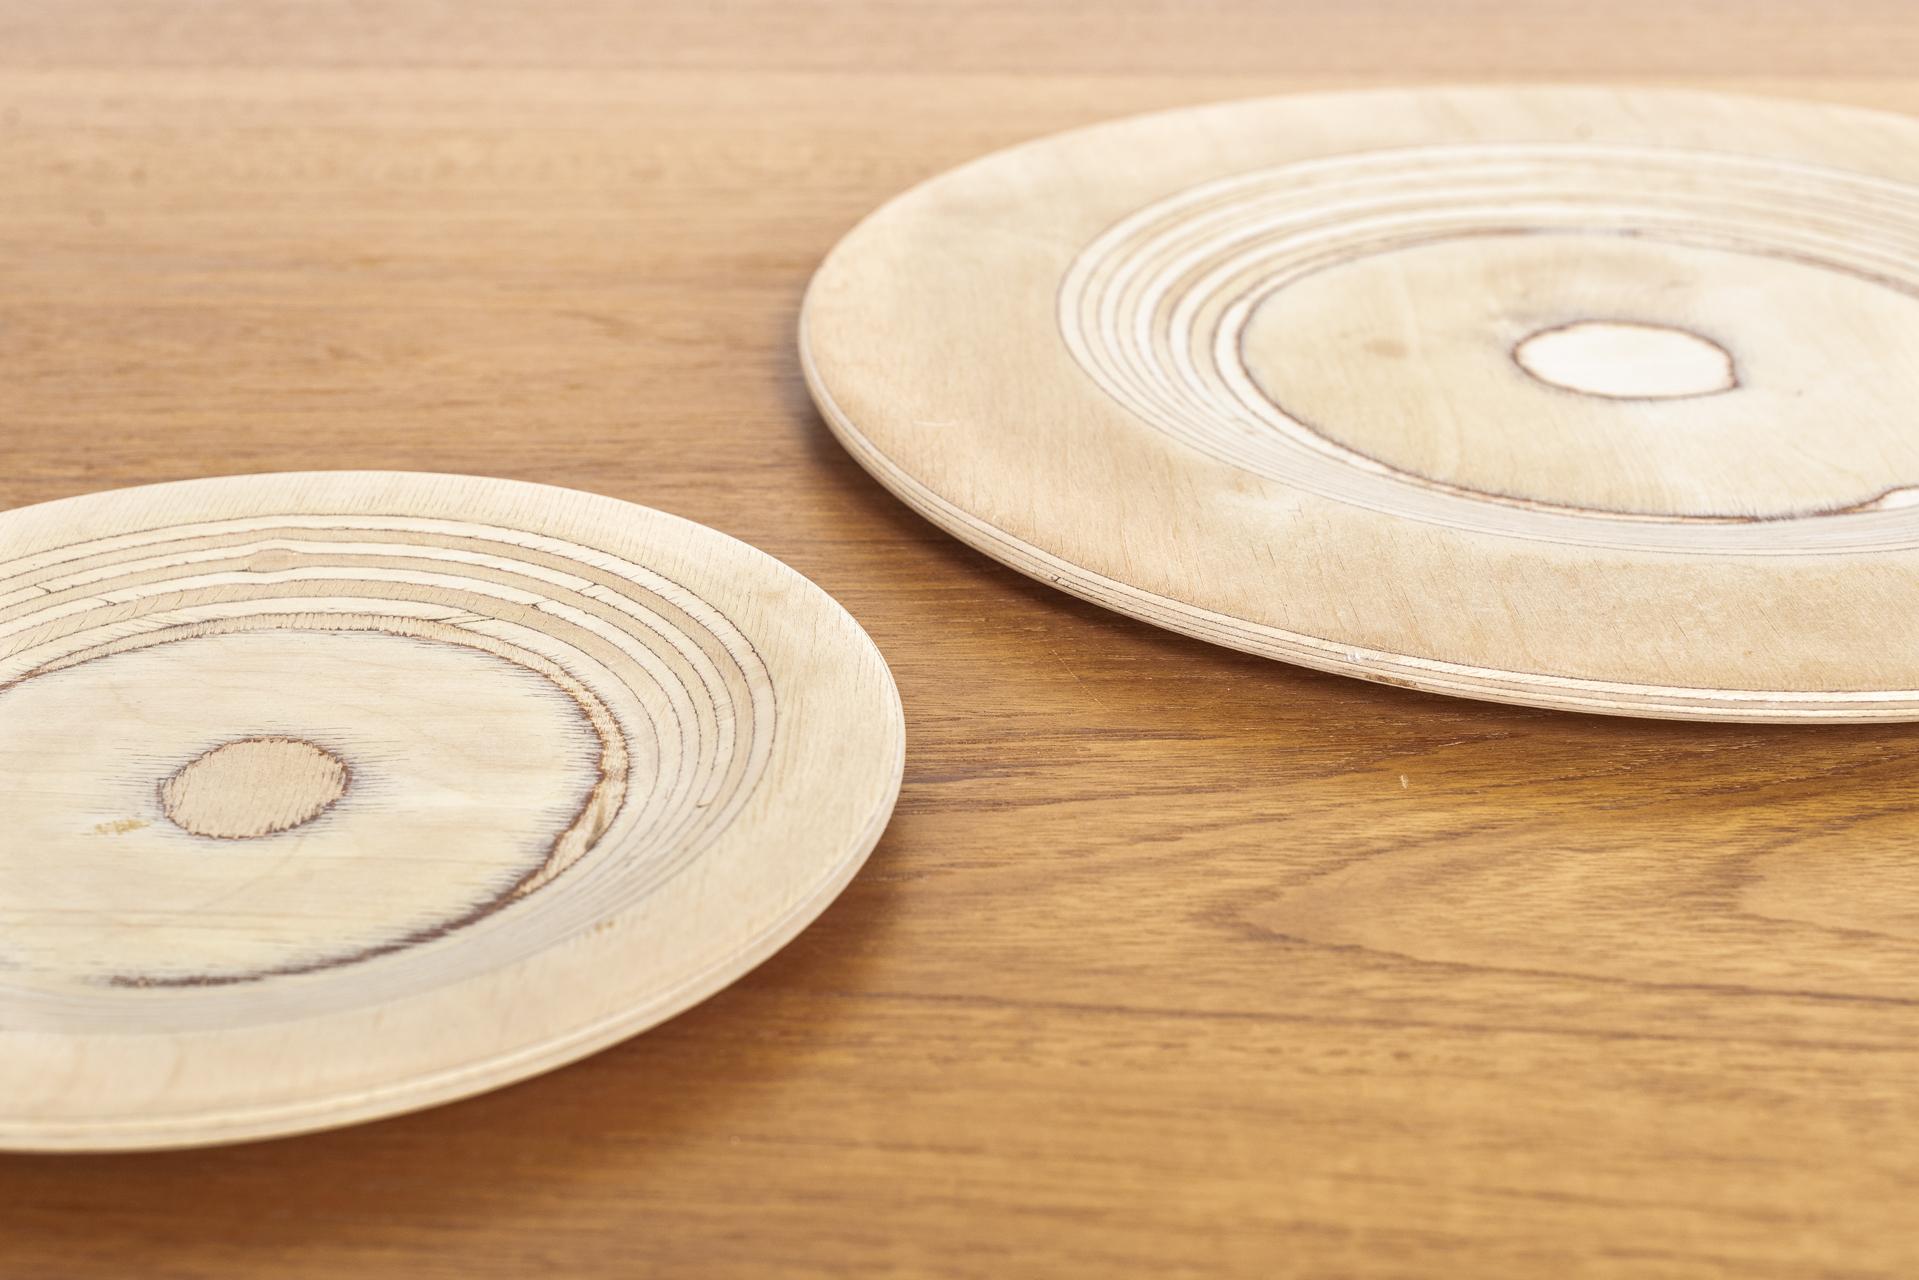 Birch Midcentury Finnish Modern Wooden Plates by Saarinen for Keuruu